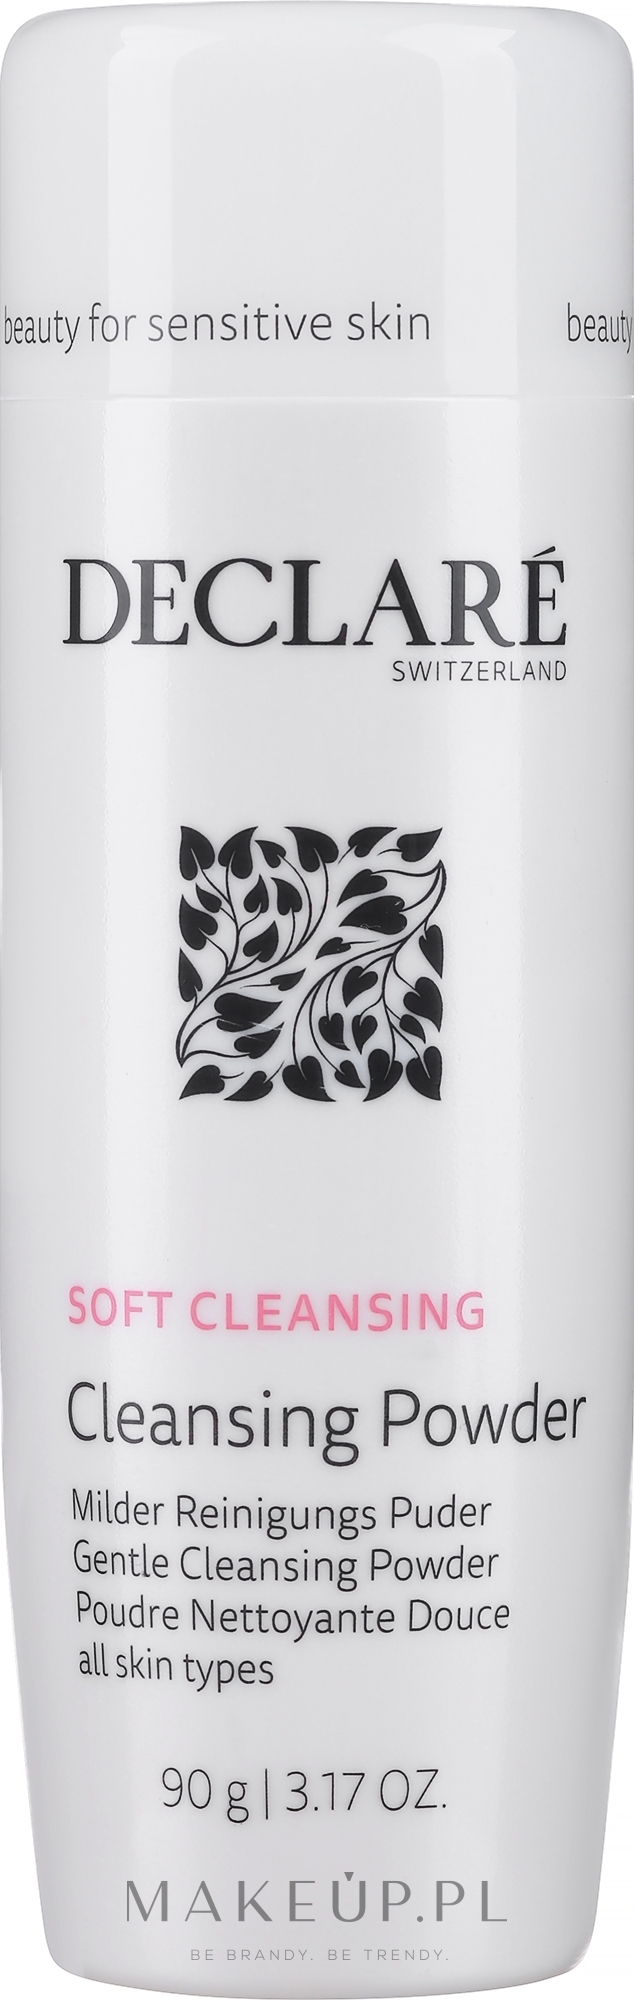 Delikatny puder oczyszczający do twarzy - Declare Gentle Cleansing Powder — Zdjęcie 90 g